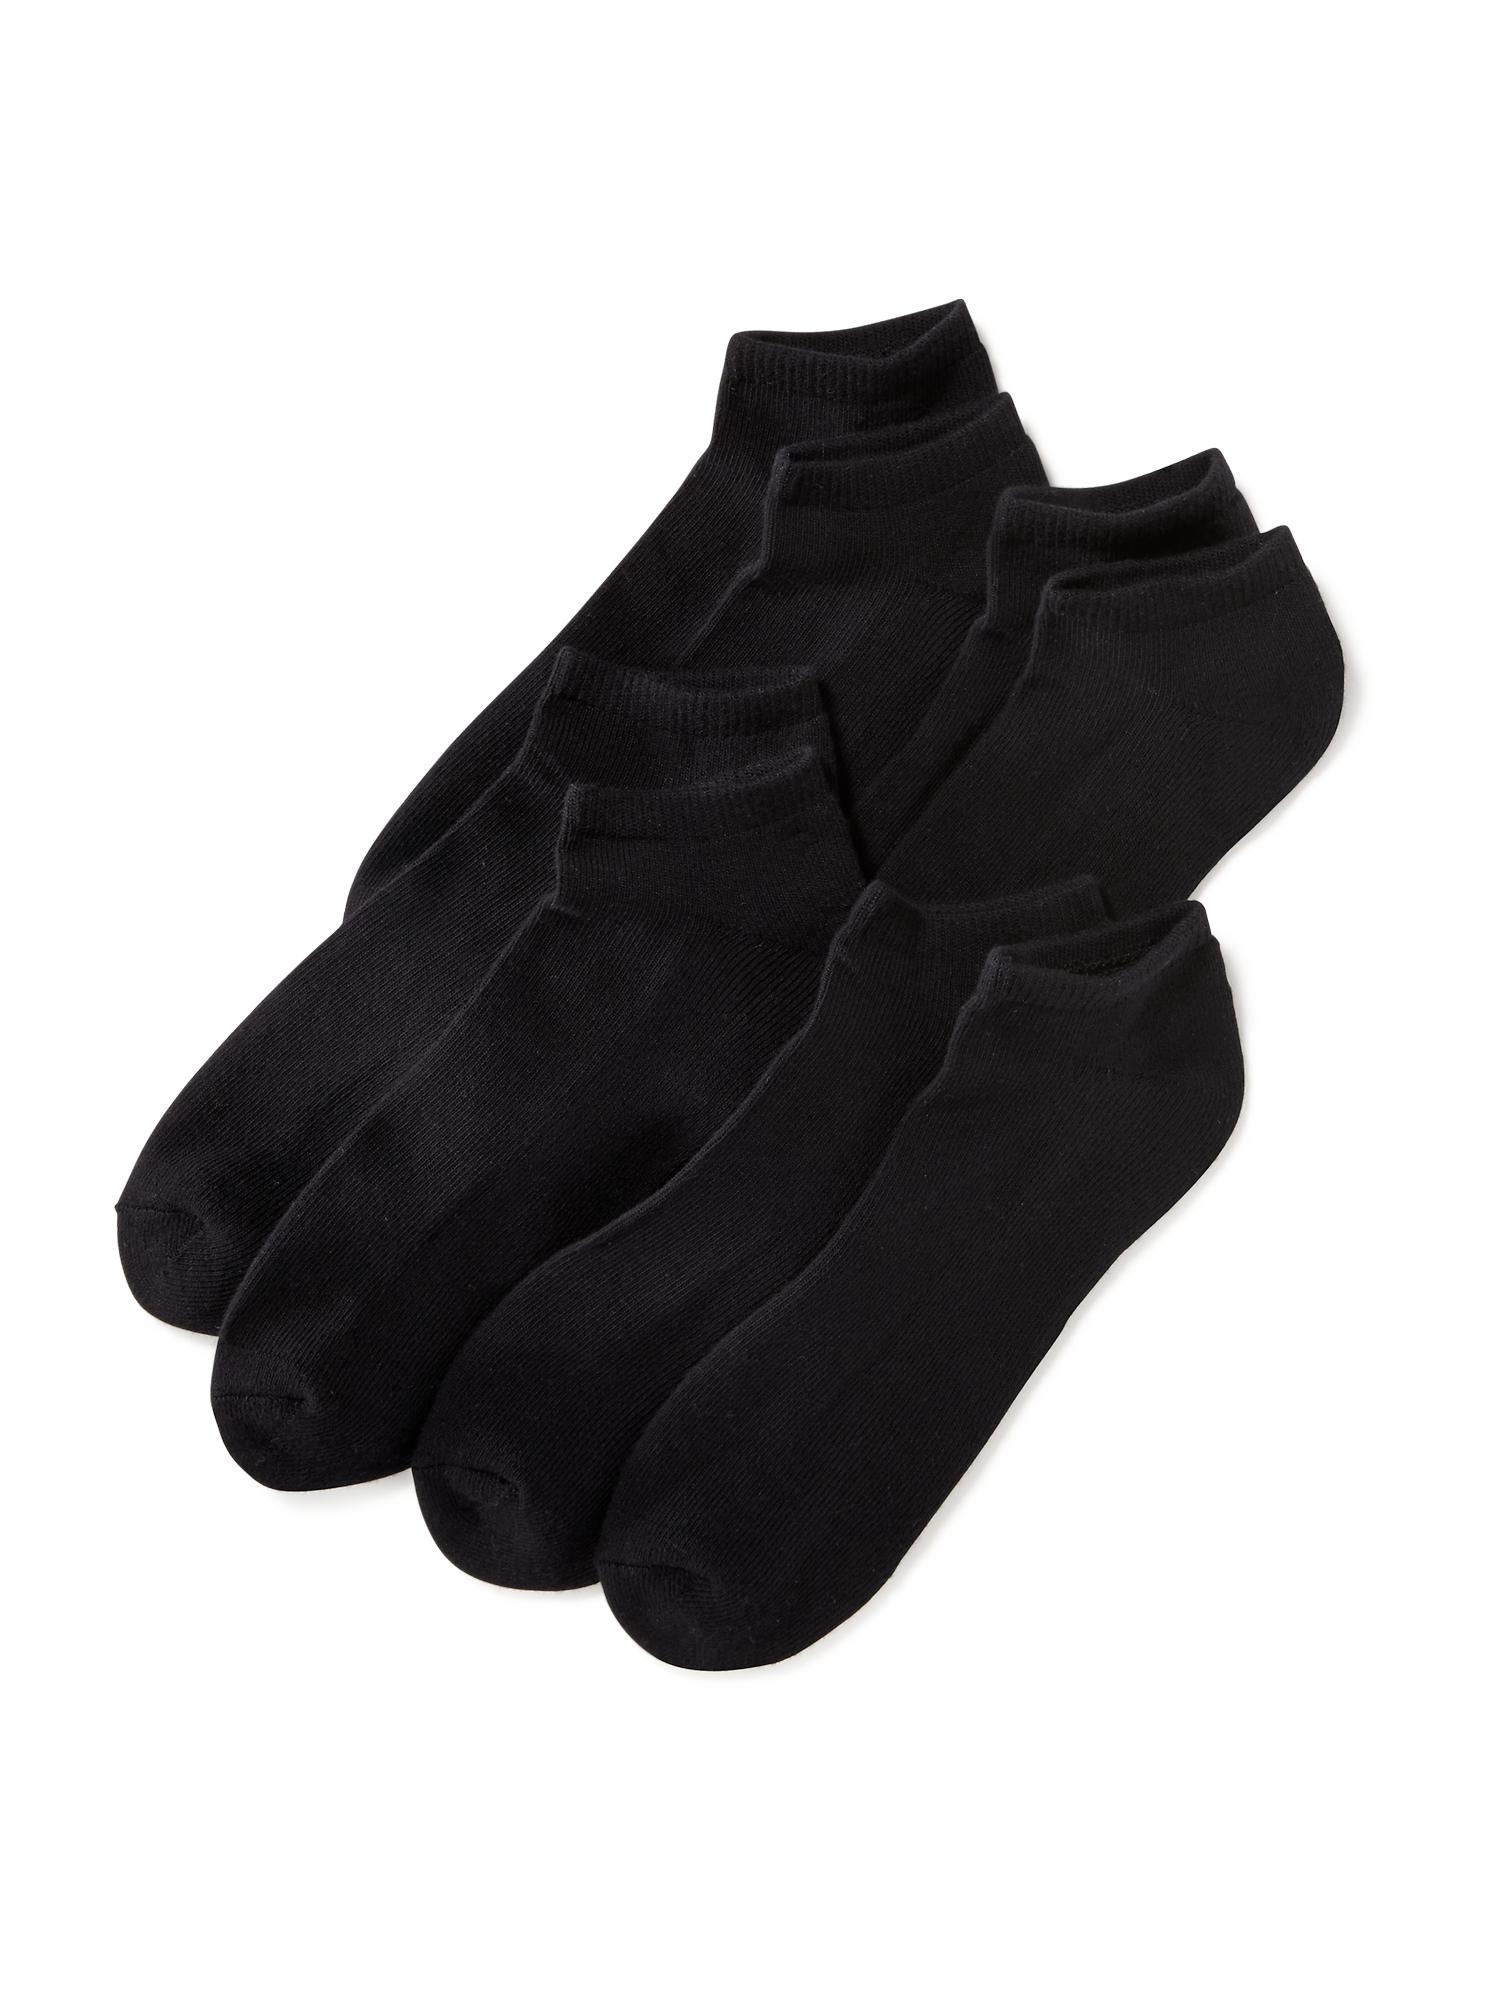 Old Navy Low-Cut Socks 4-Pack black. 1